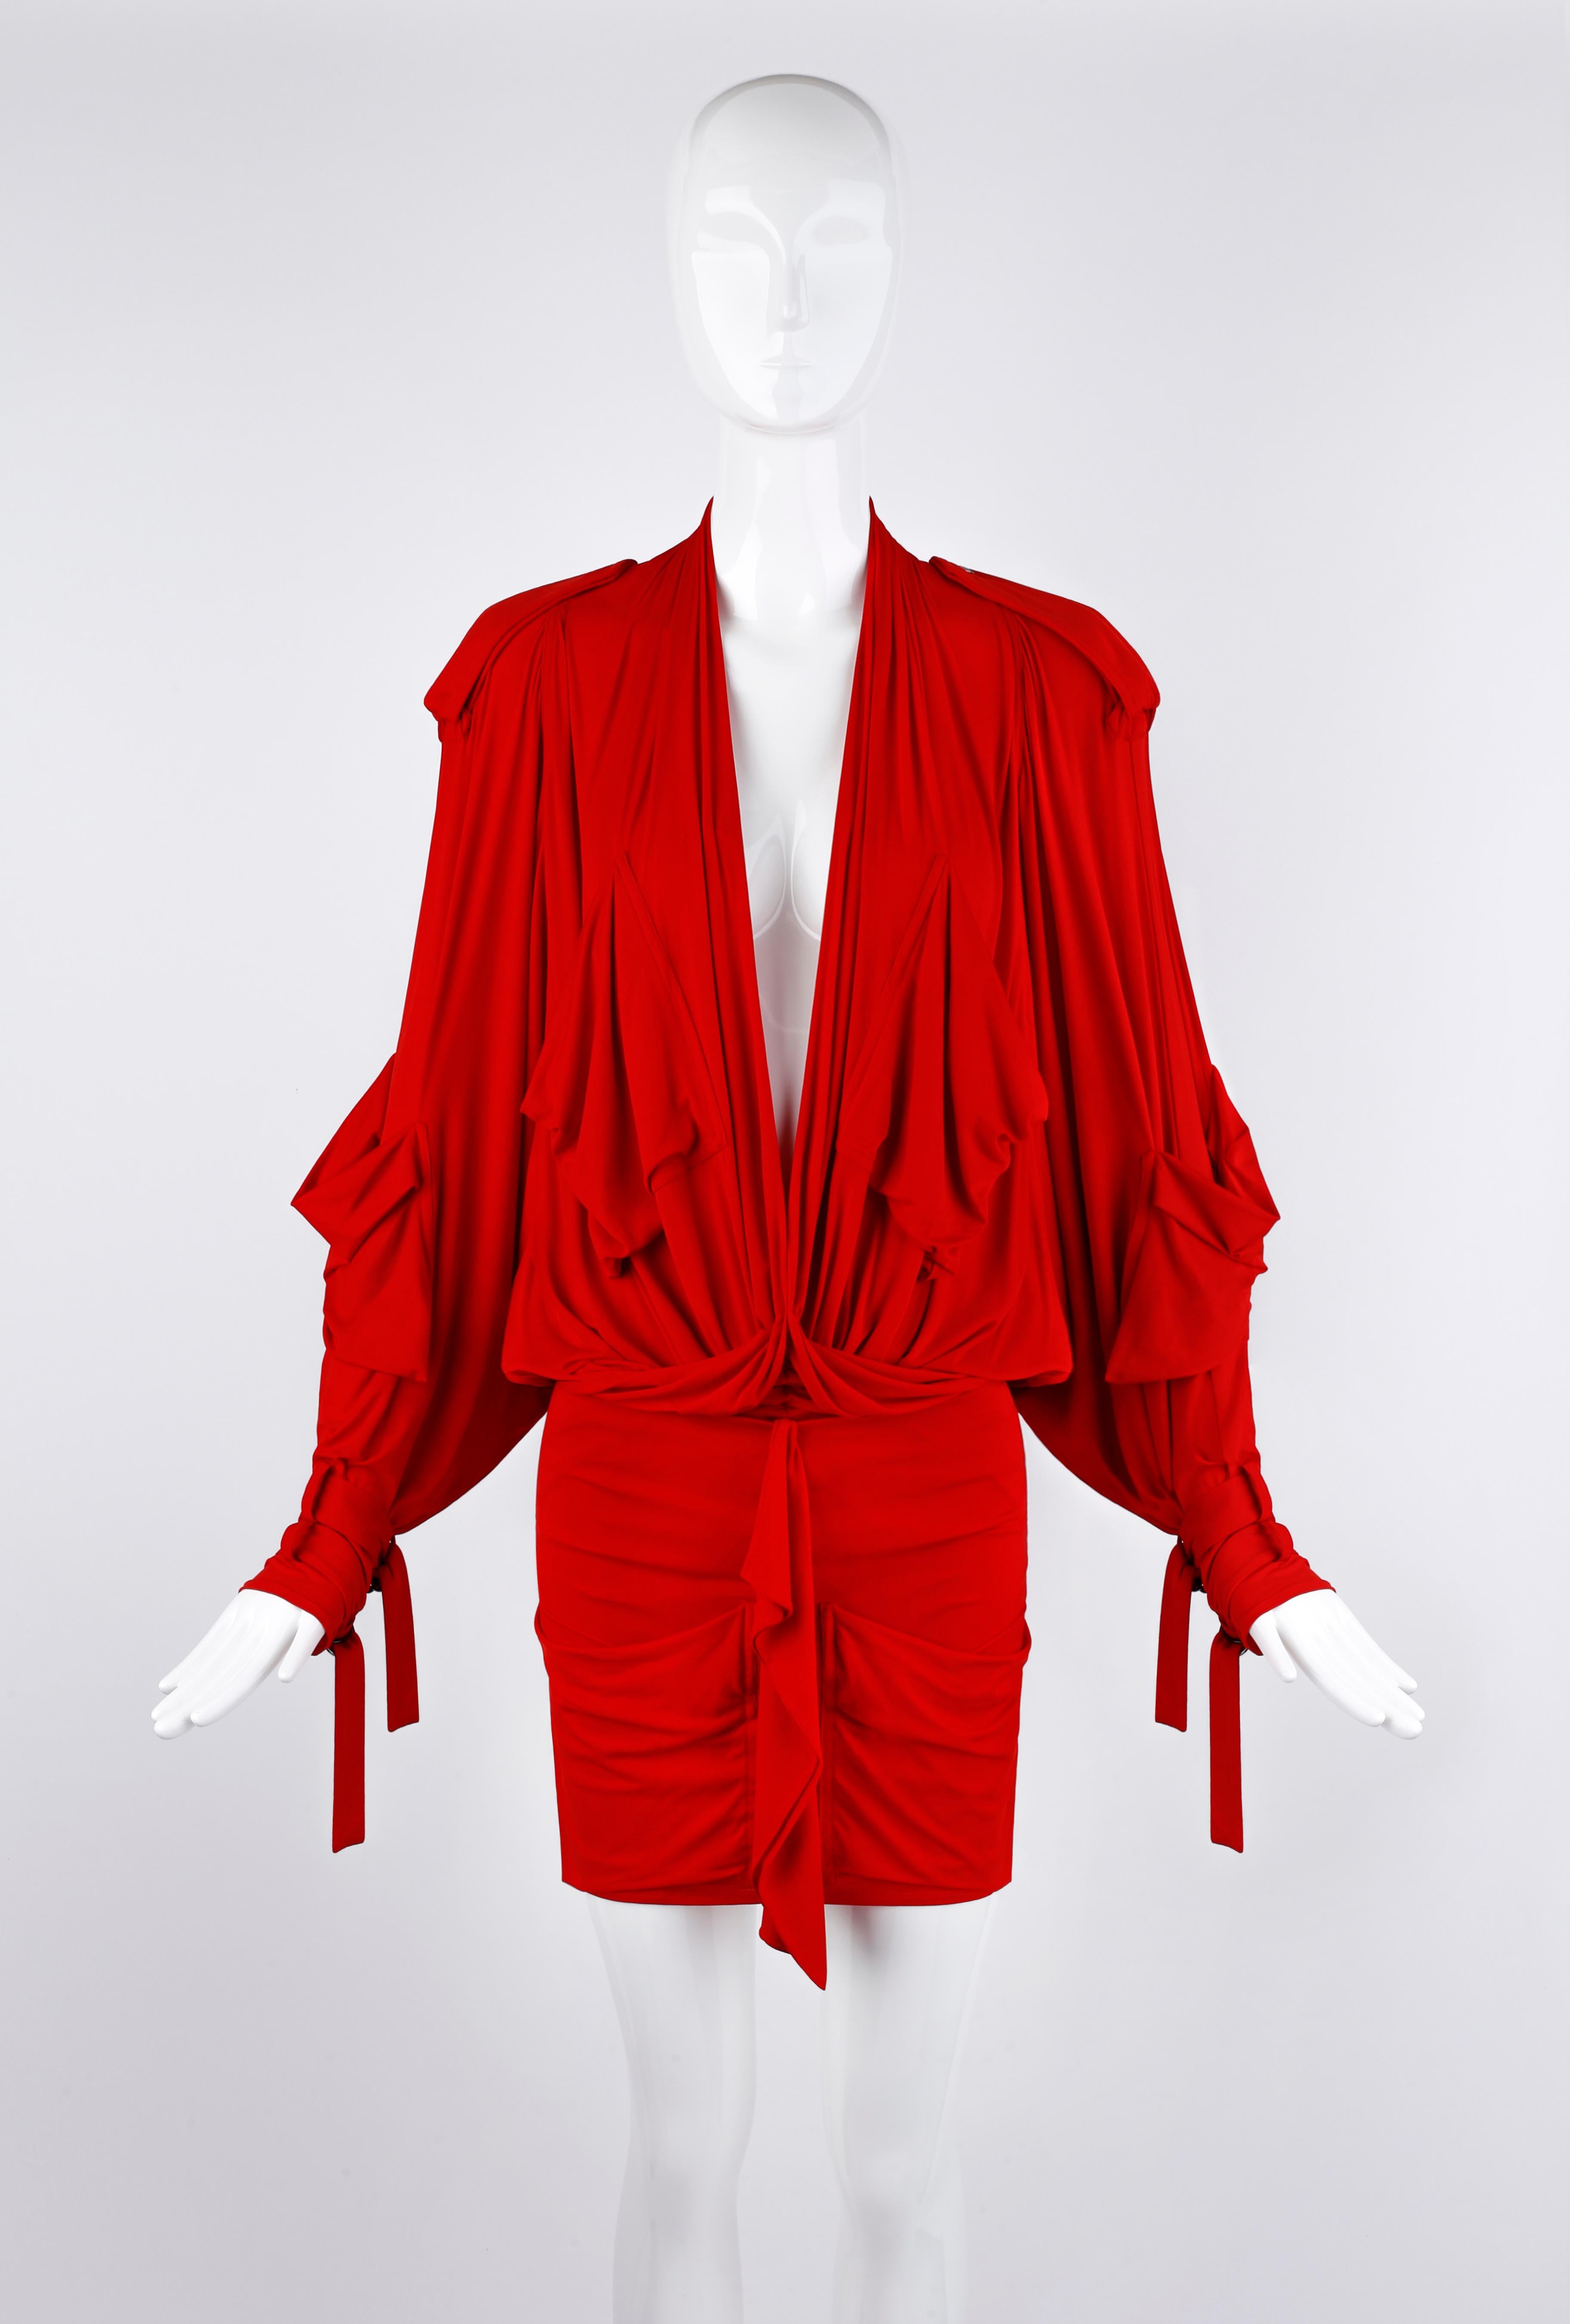 Entworfen von John Galliano für die Frühjahr/Sommer-Kollektion 2003 von Christian Dior. Überdimensioniertes Design mit sorgfältig ausgearbeitetem Sexappeal. Vorne geraffte/geschlitzte und hinten geschlitzte Drapierung. Übergroße Fledermausärmel mit